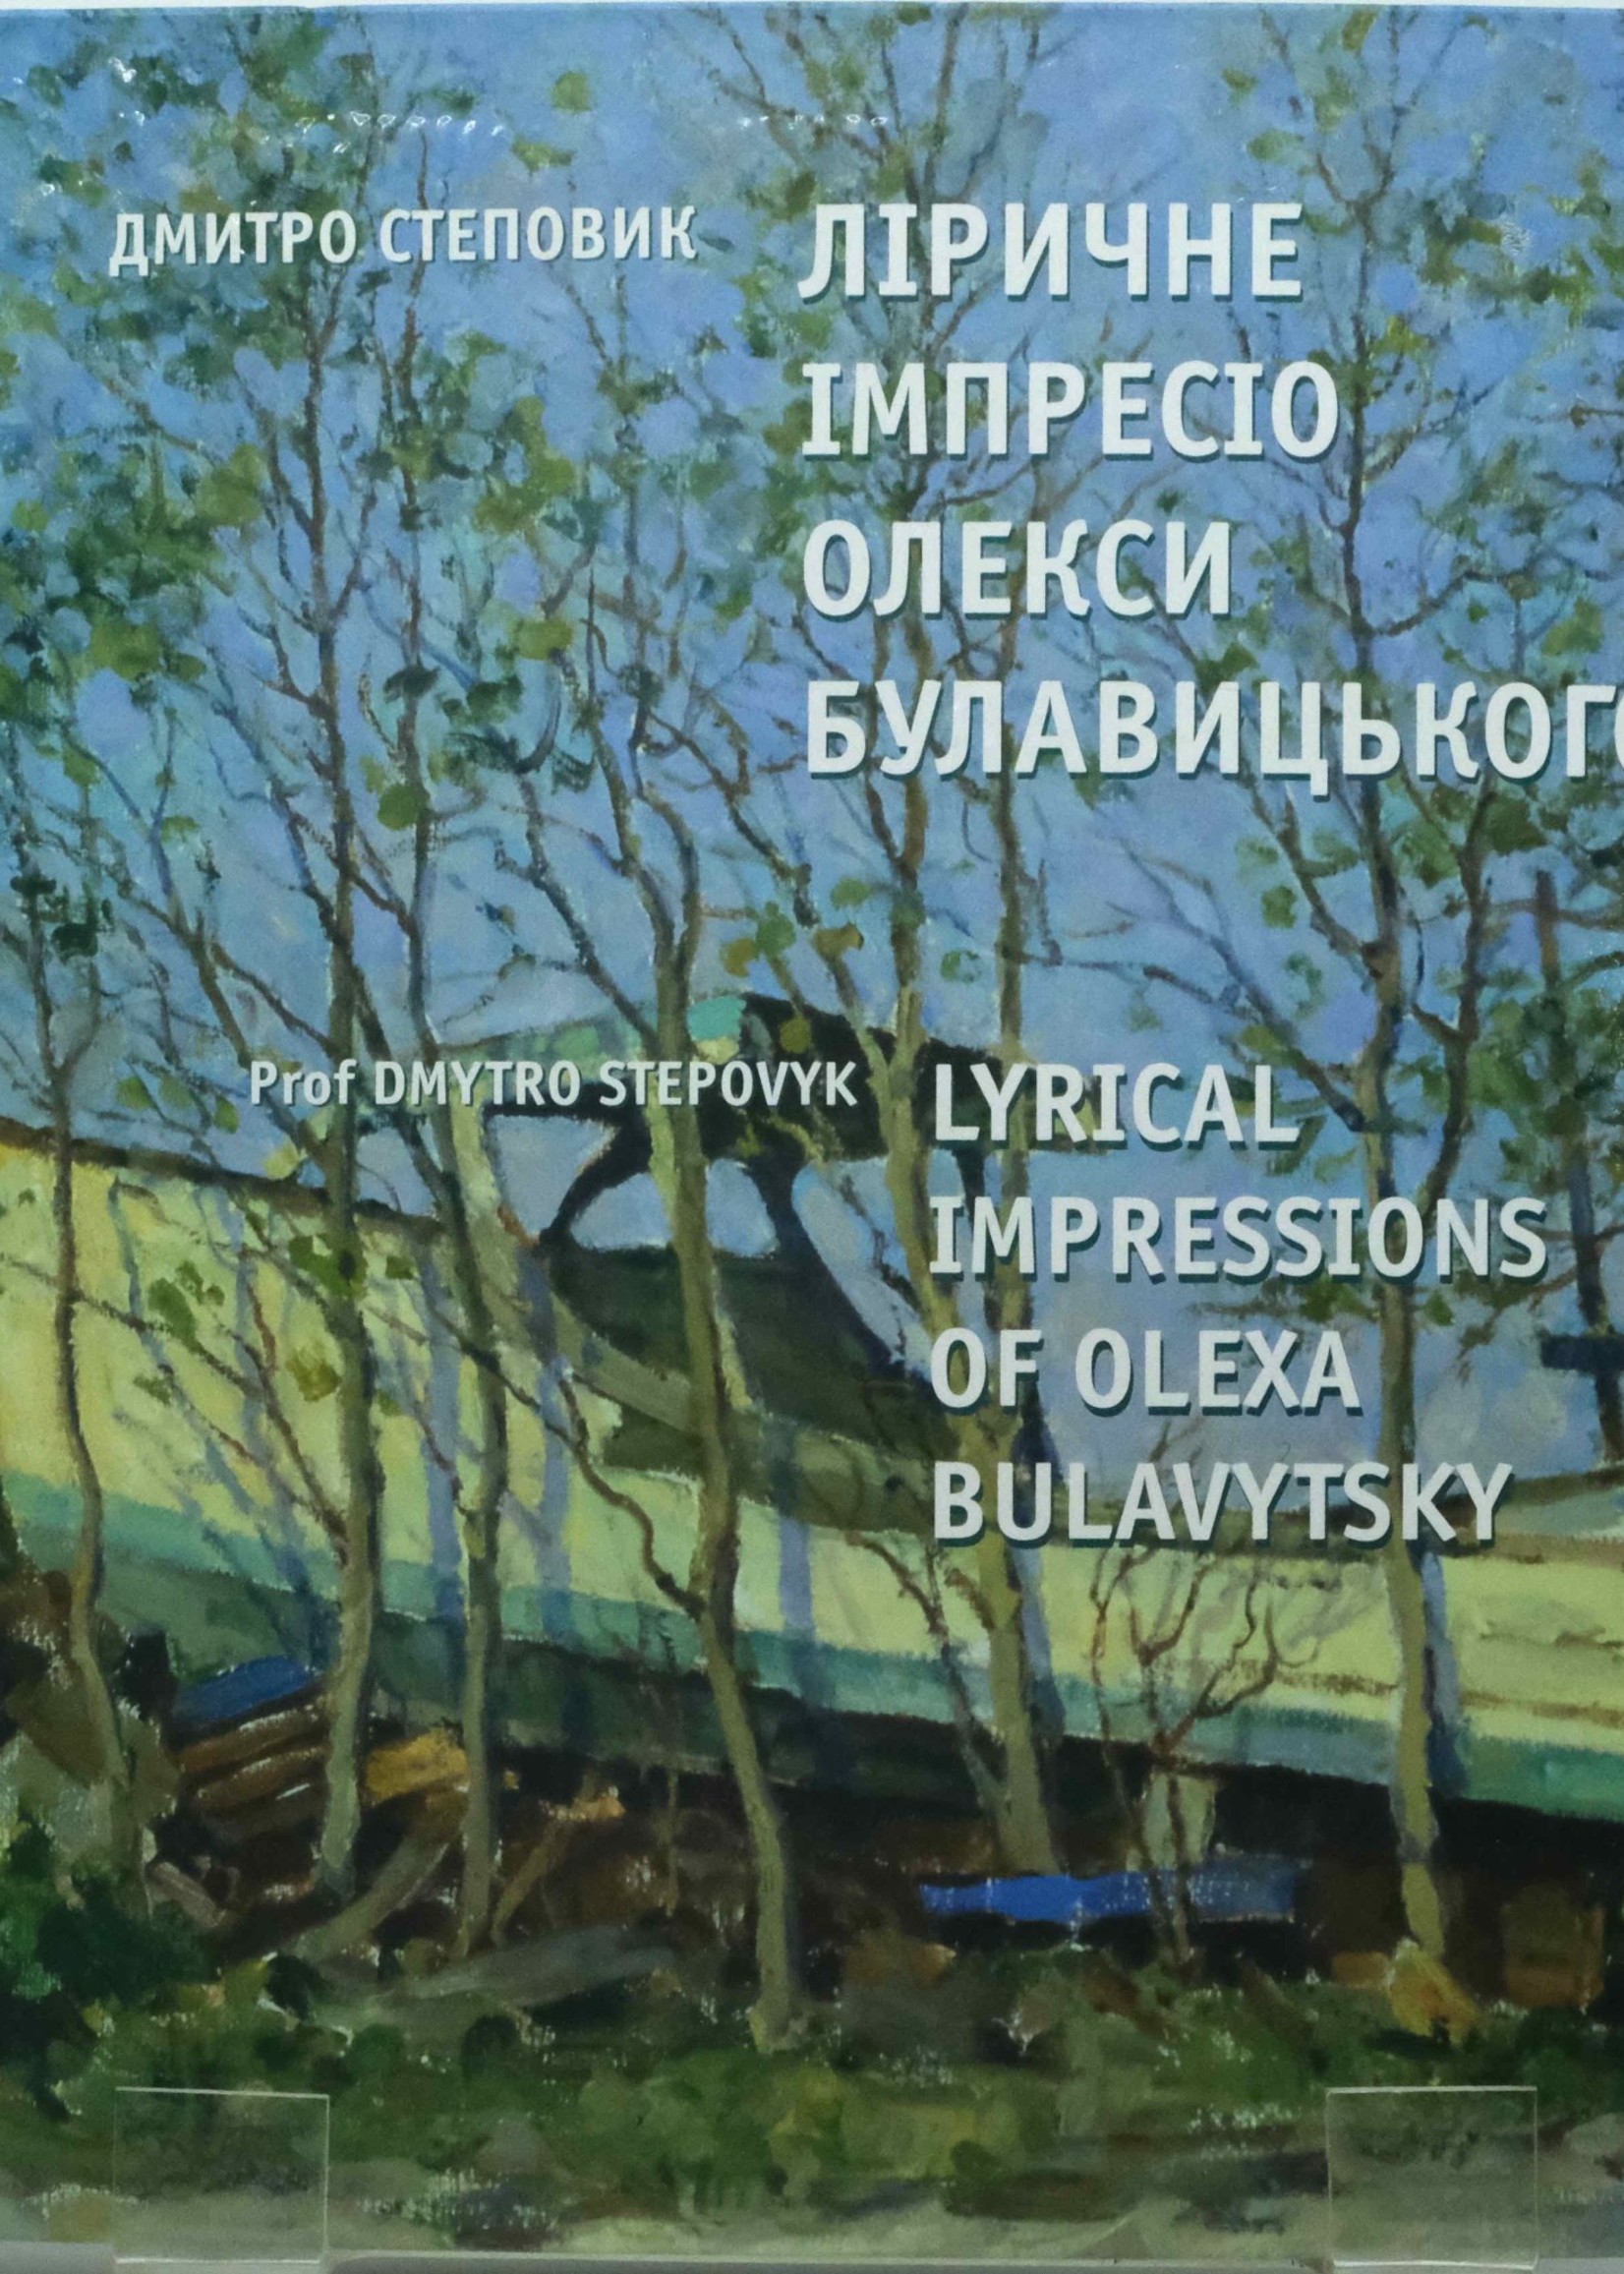 None BOOK Lyrical Impressions of Olexa Bulavytsky by Dmitro Stepovik